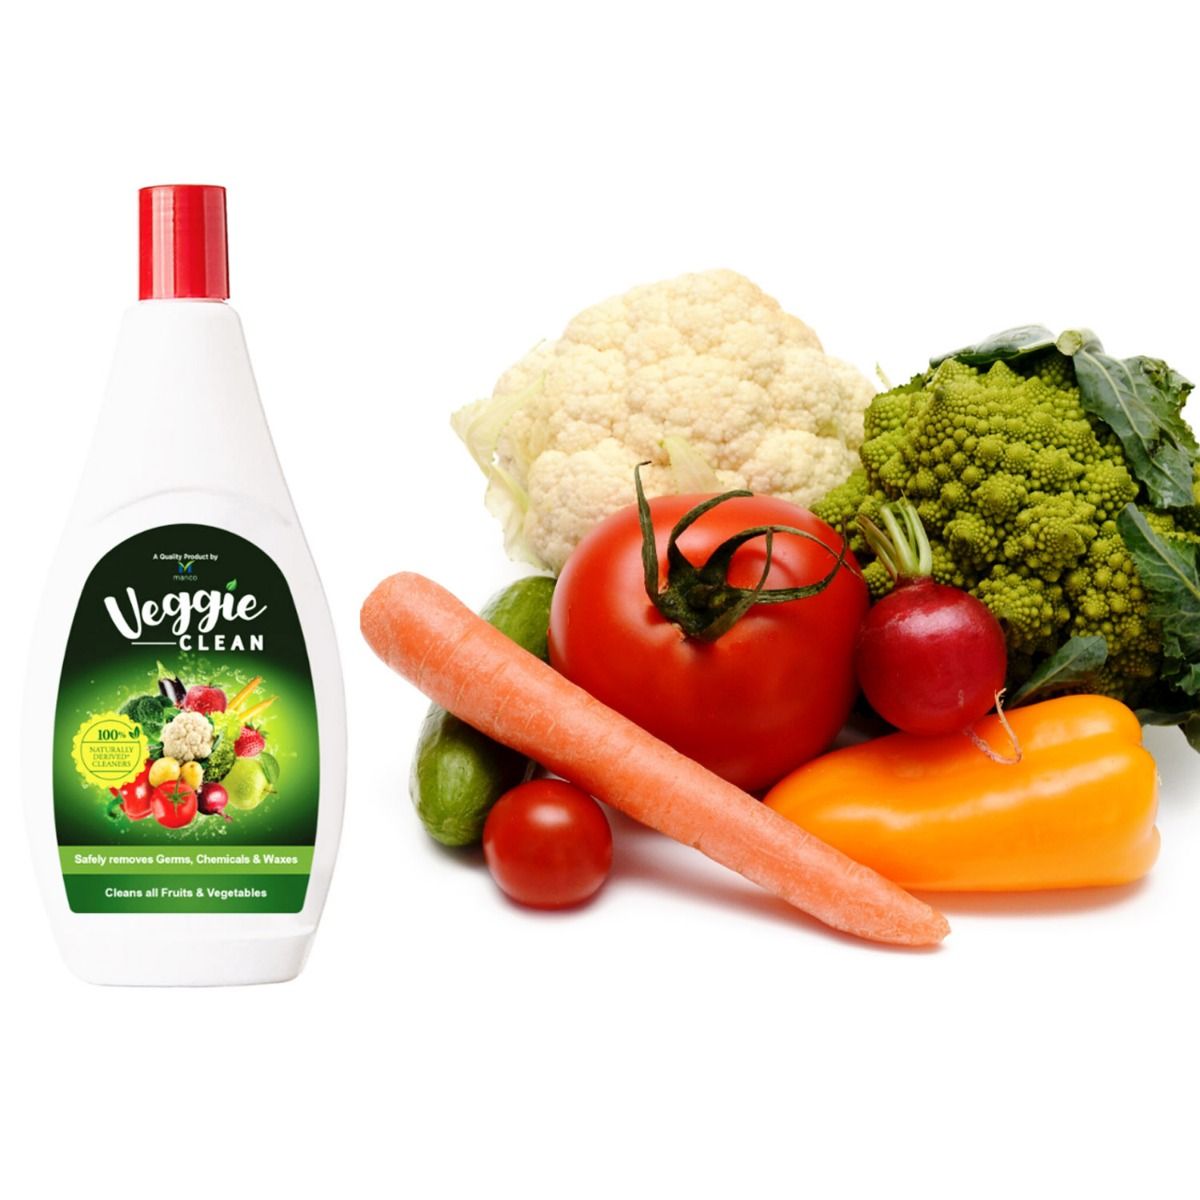 Marico Veggie Clean, 400 ml, Pack of 1 